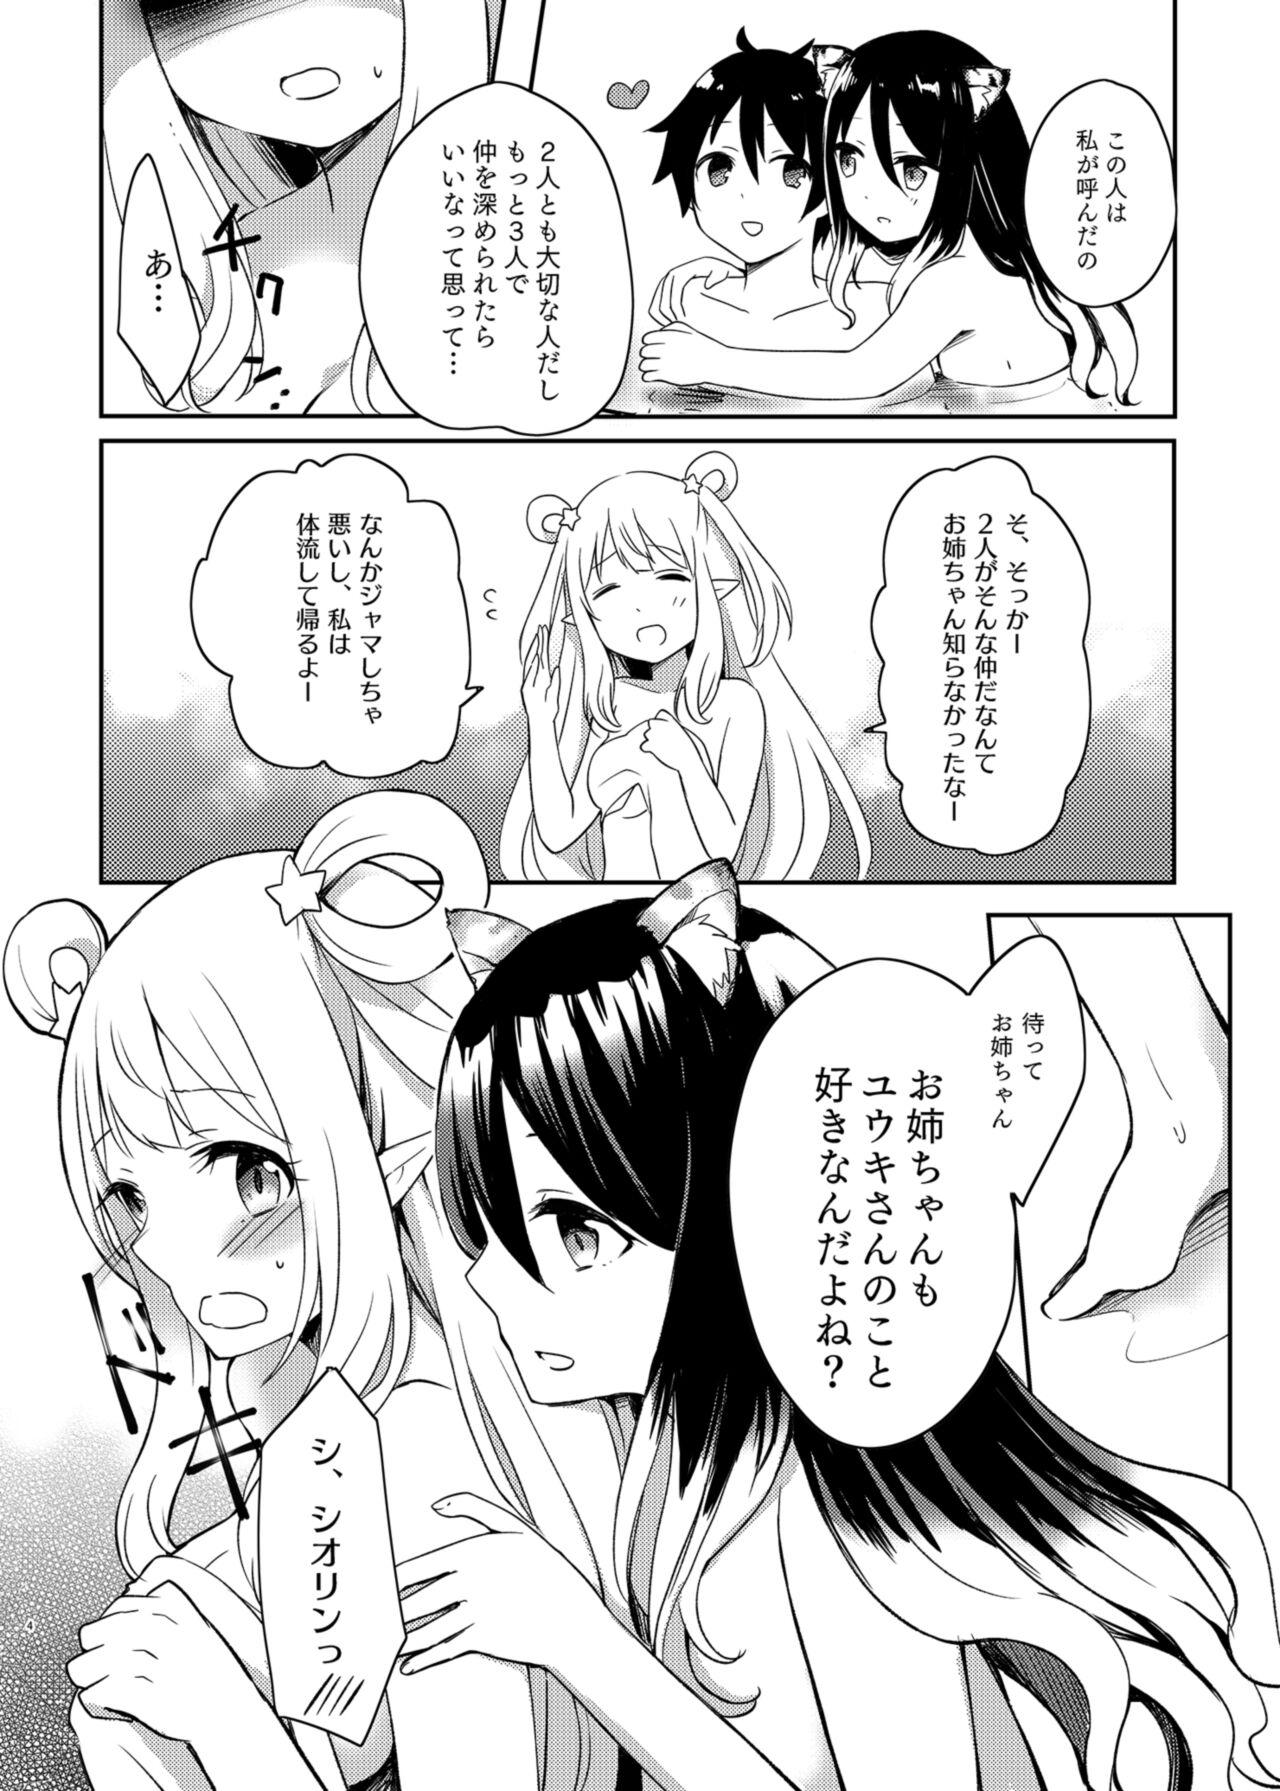 Babes Hatsune to Shiori no Yukemuri Daisakusen - Princess connect Gaydudes - Page 4